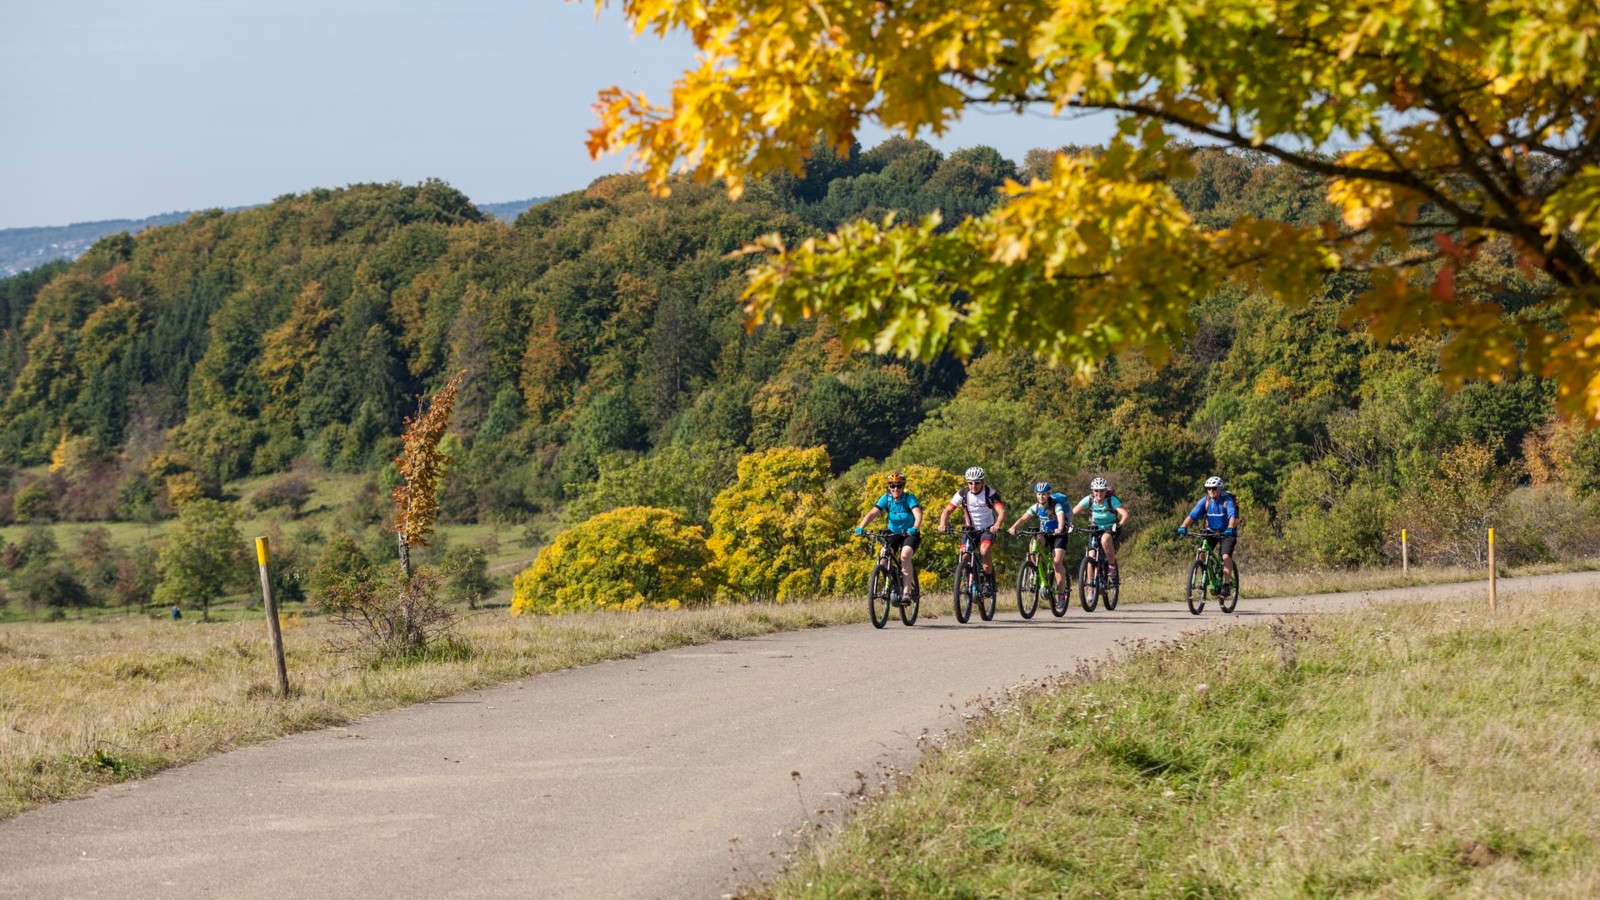 Radtour im Herbst über den ehemaligen Truppenübungsplatz Münsingen im Biosphärengebiet Schwäbische Alb. Fünf Radfahrer*innen fahren auf einer Teerstraße leicht bergauf. Sie sind sportlich kurz gekleidet. Vom rechten Bildrand ragt ein Baum in herbstlichen Farben ins Bild, im Hintergrund ist Wald.